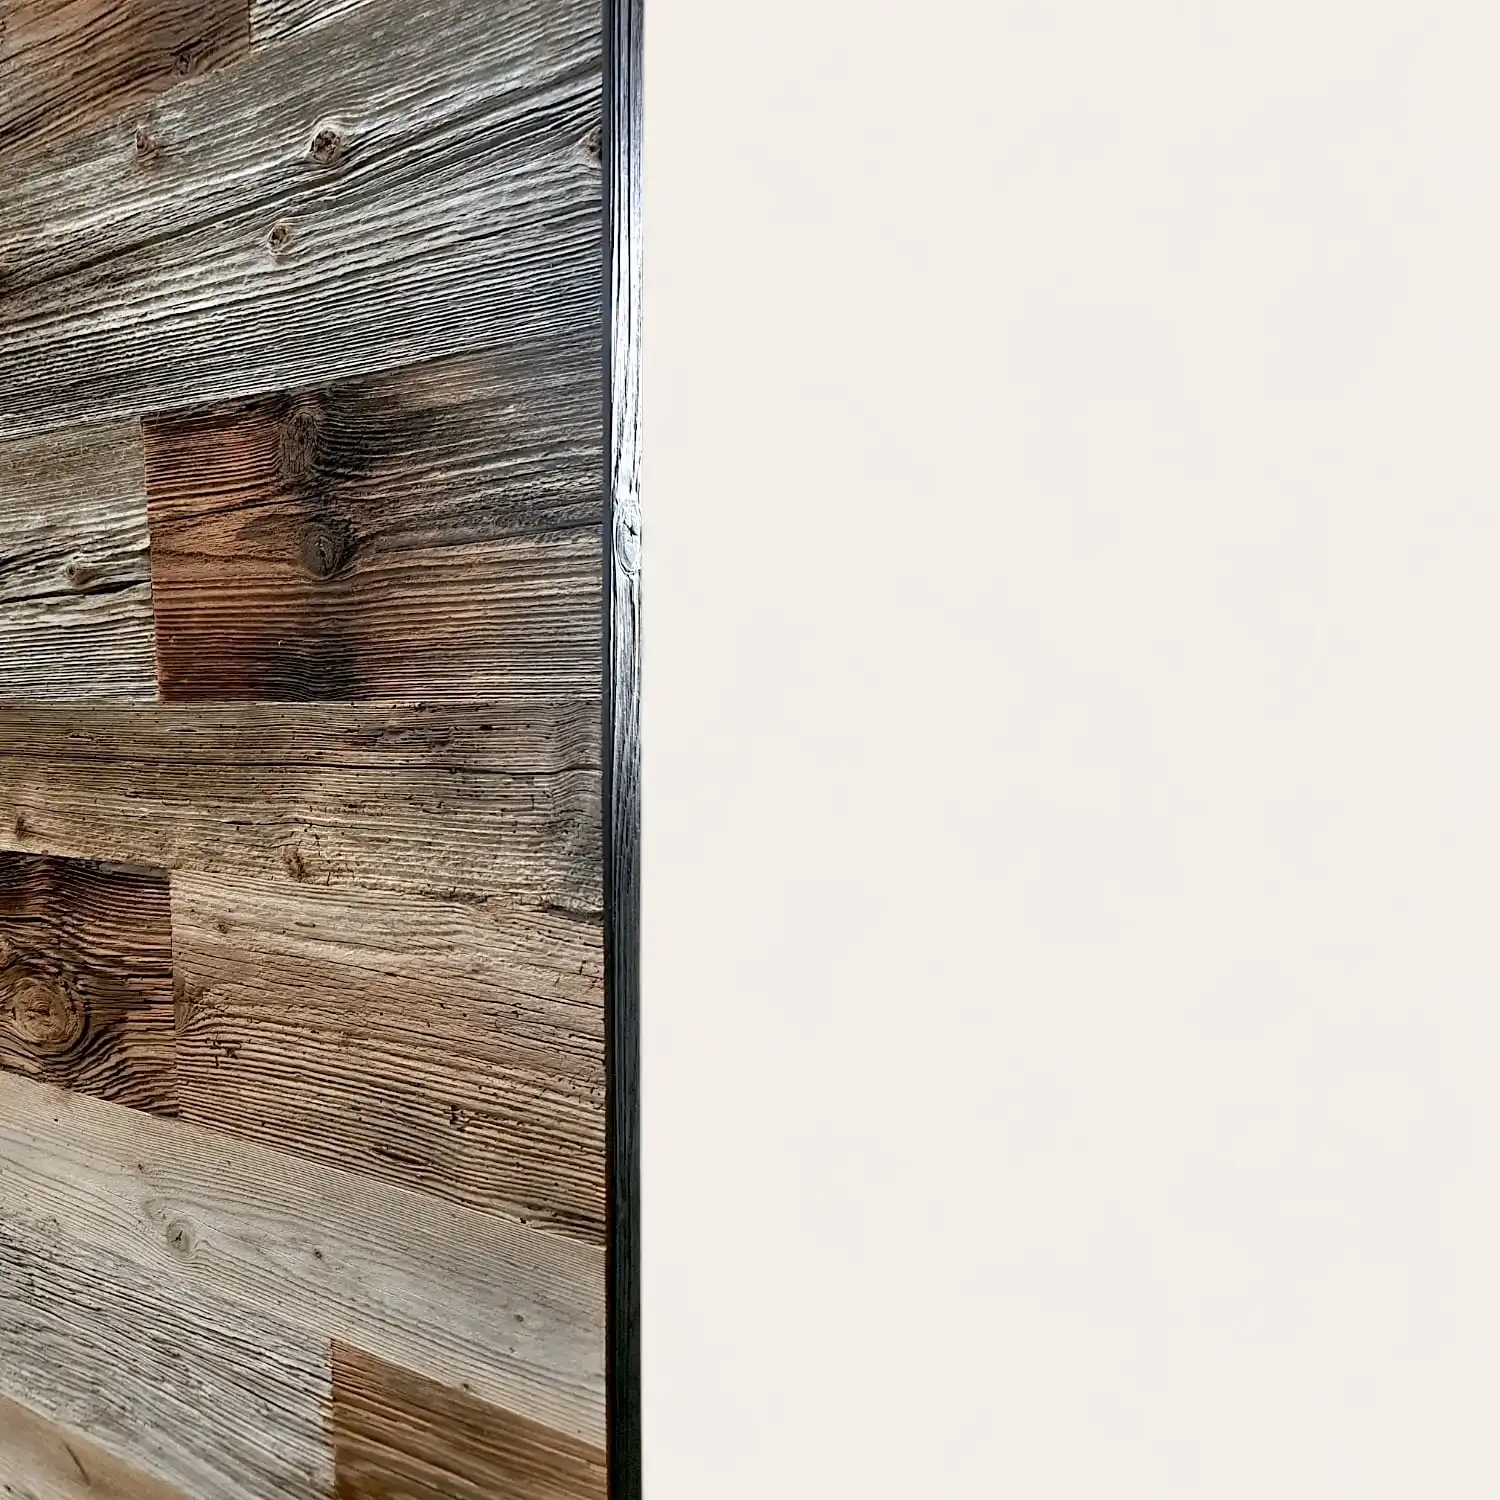  Un mur en bois avec des panneaux de bois vieilli dessus. 